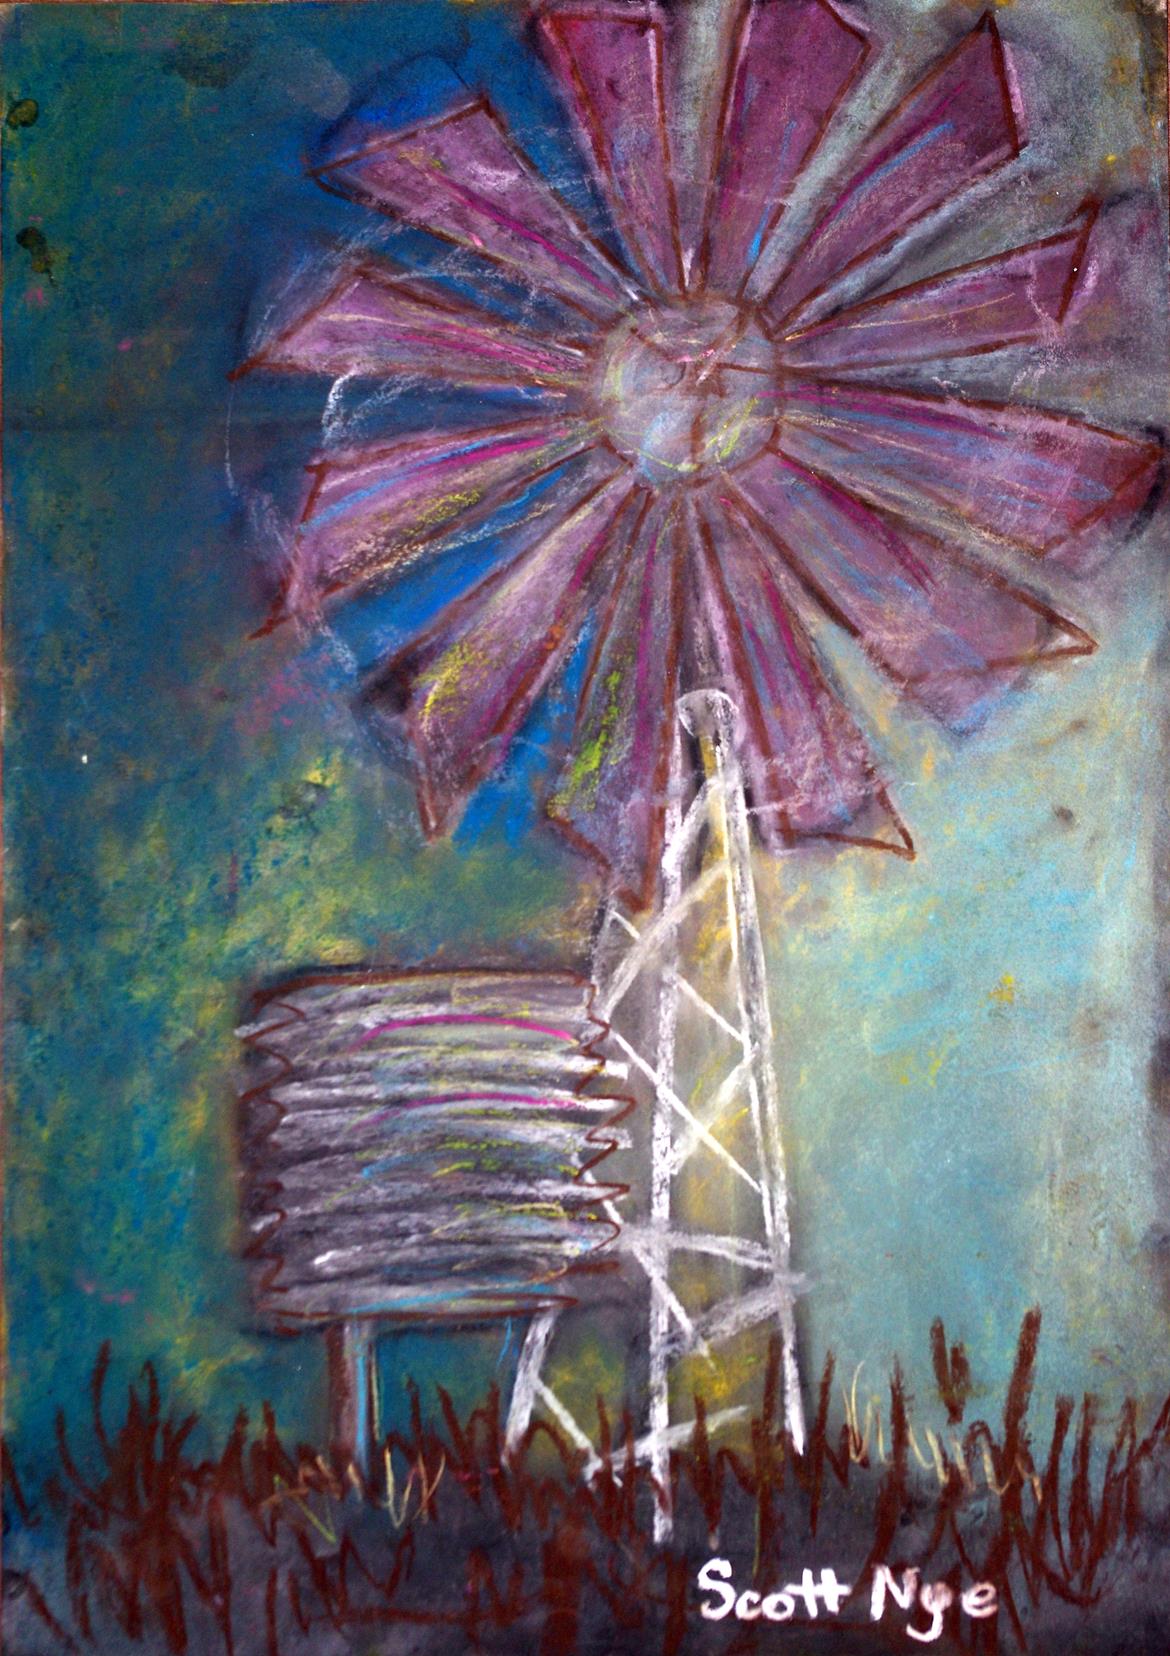 Windmill2